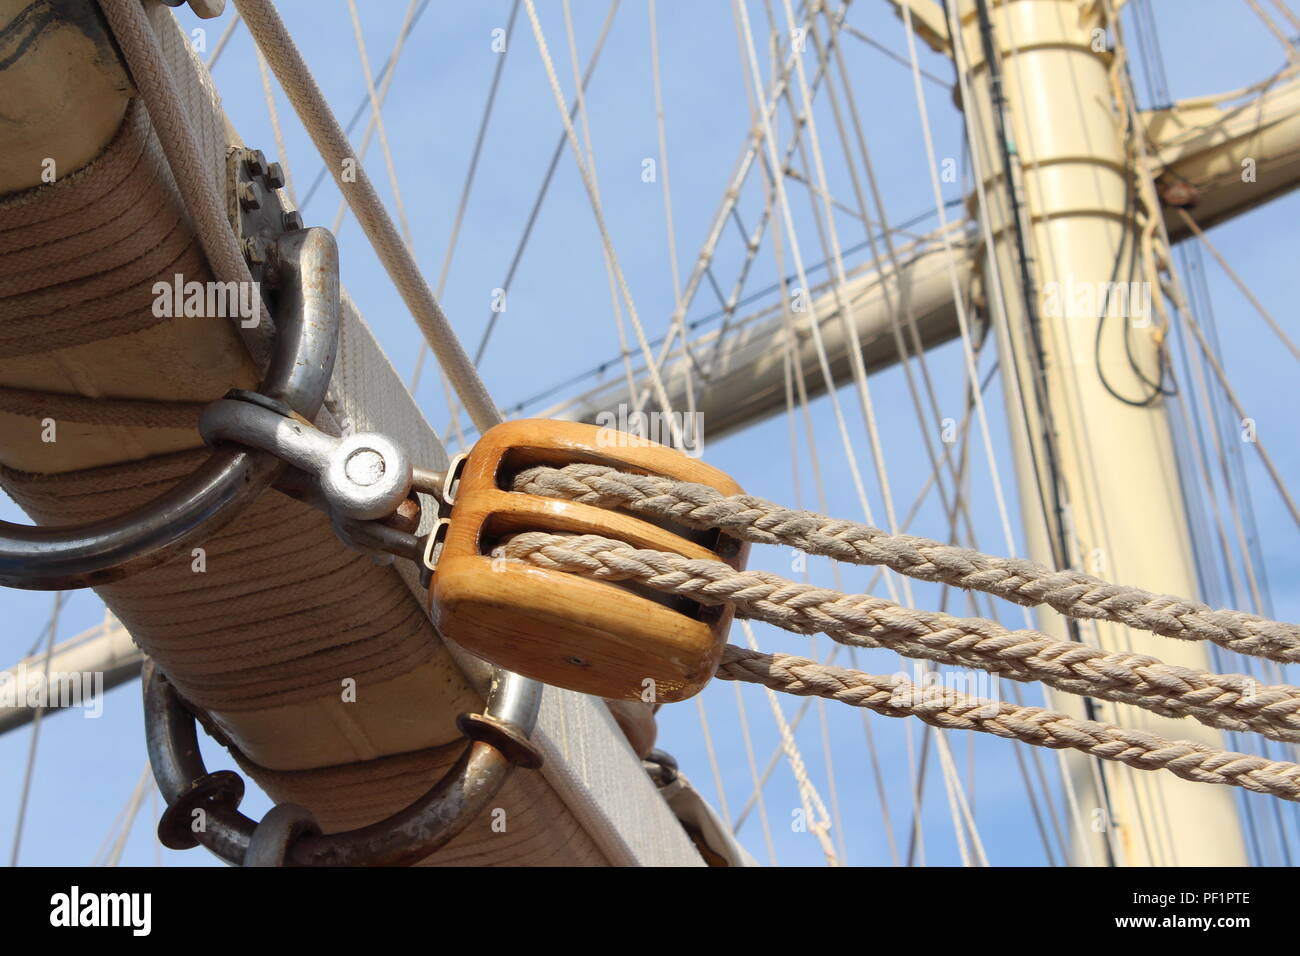 Geflochtenes Seil, Rigging und Riemenscheibe auf einem Clipper Ship  Stockfotografie - Alamy